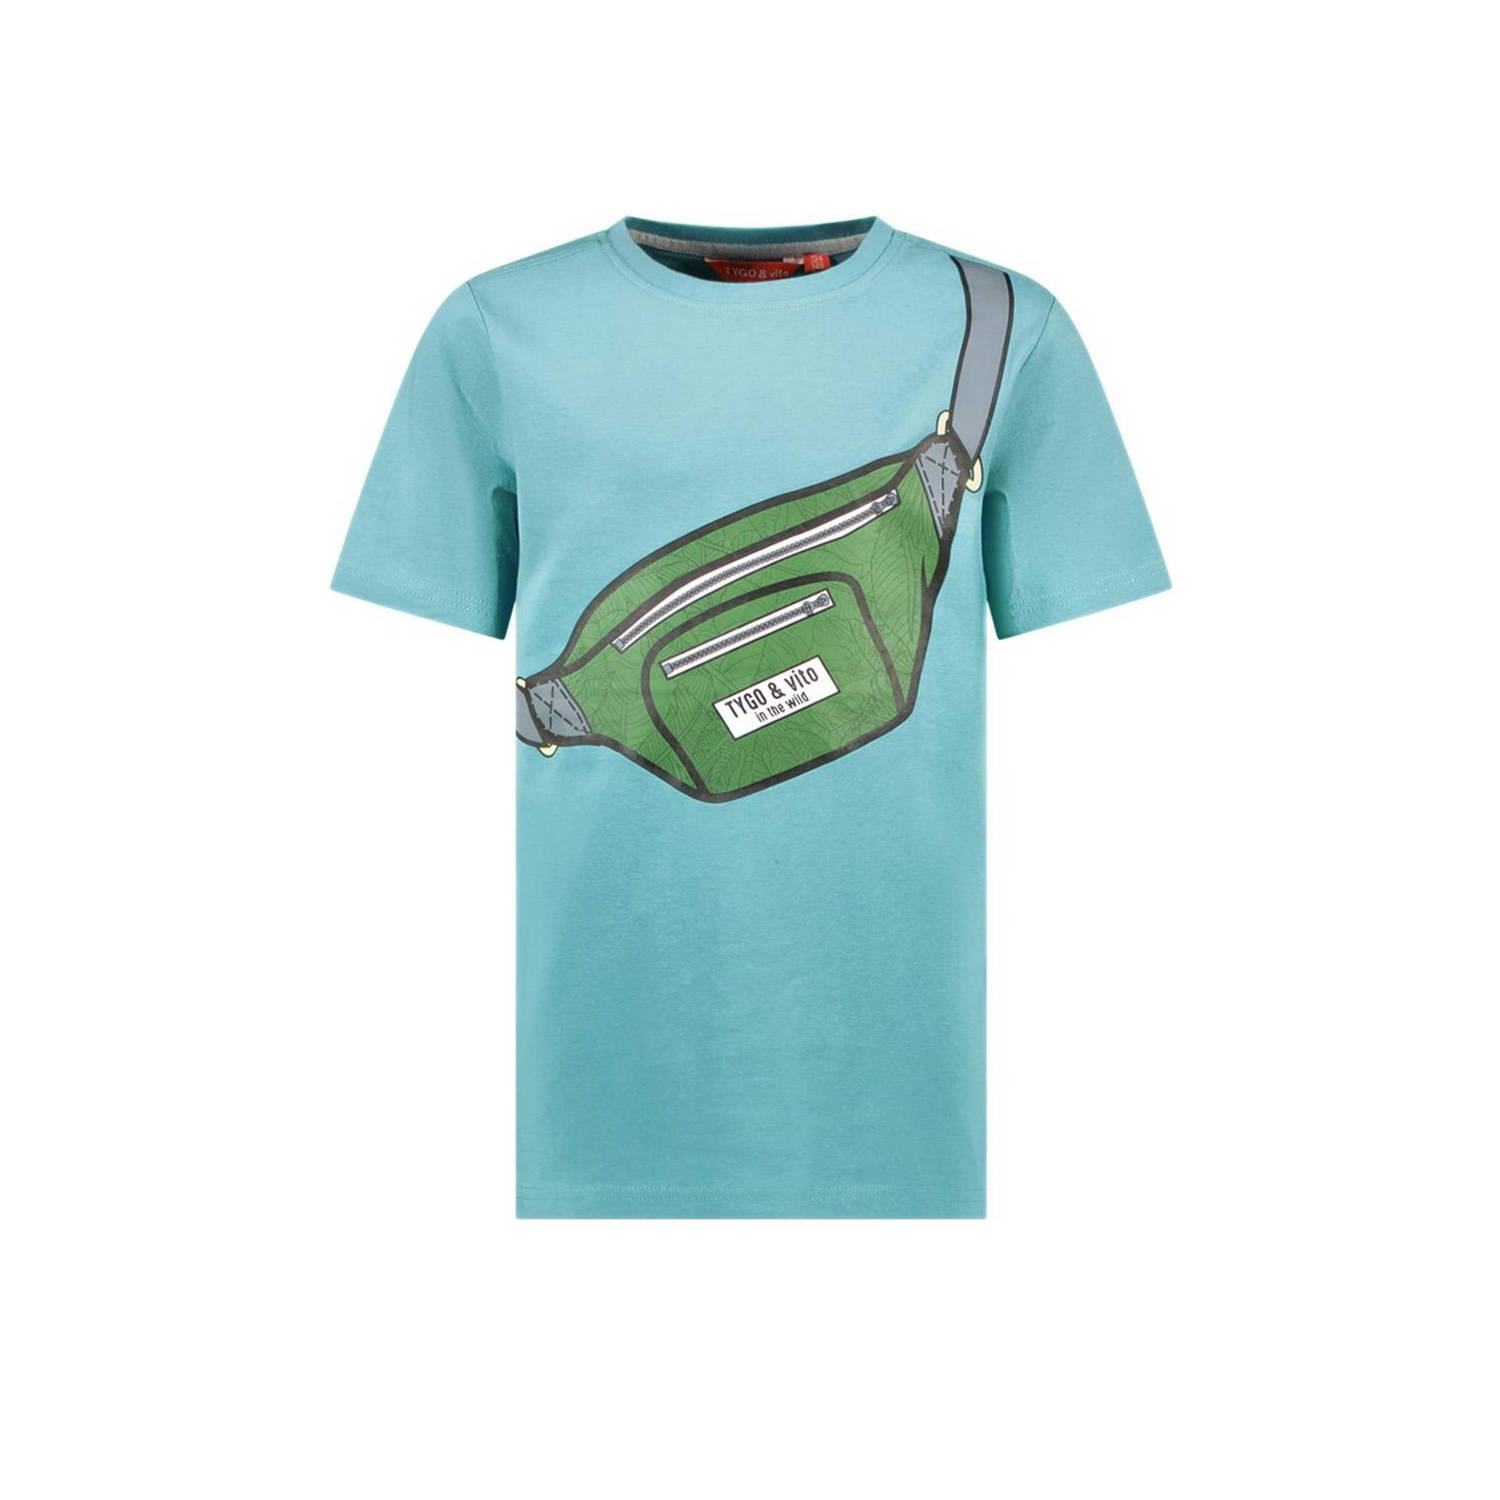 TYGO & vito T-shirt Toby met printopdruk aquablauw